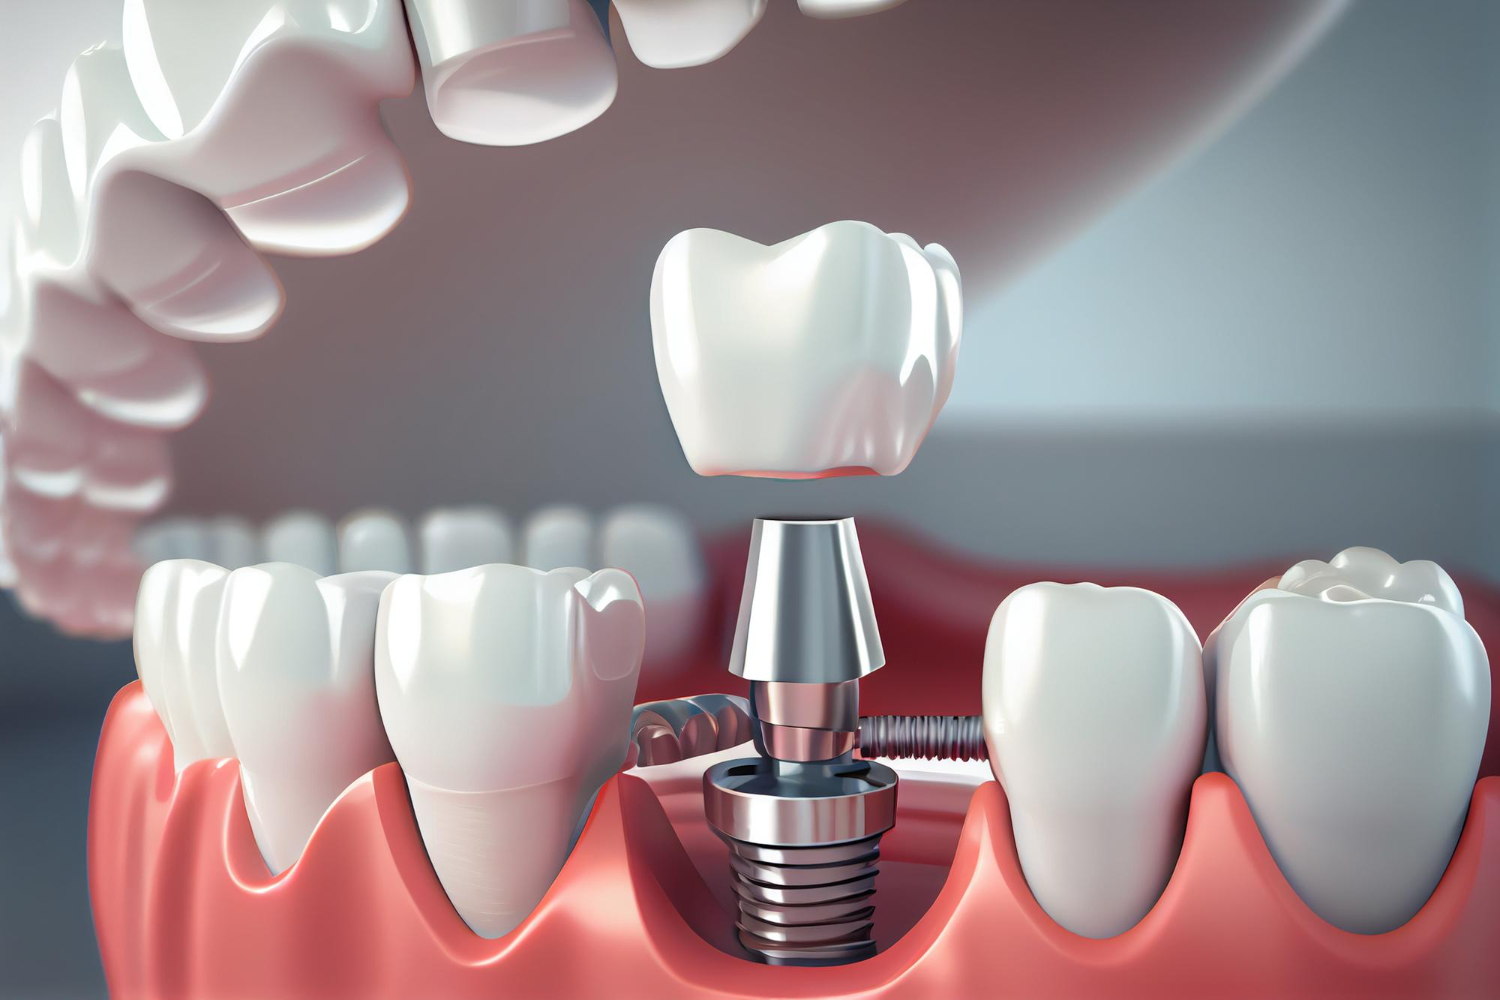 Amedent - Clínica Dental en Valencia|Implantes dentales vs Puentes fijos: Una comparación detallada